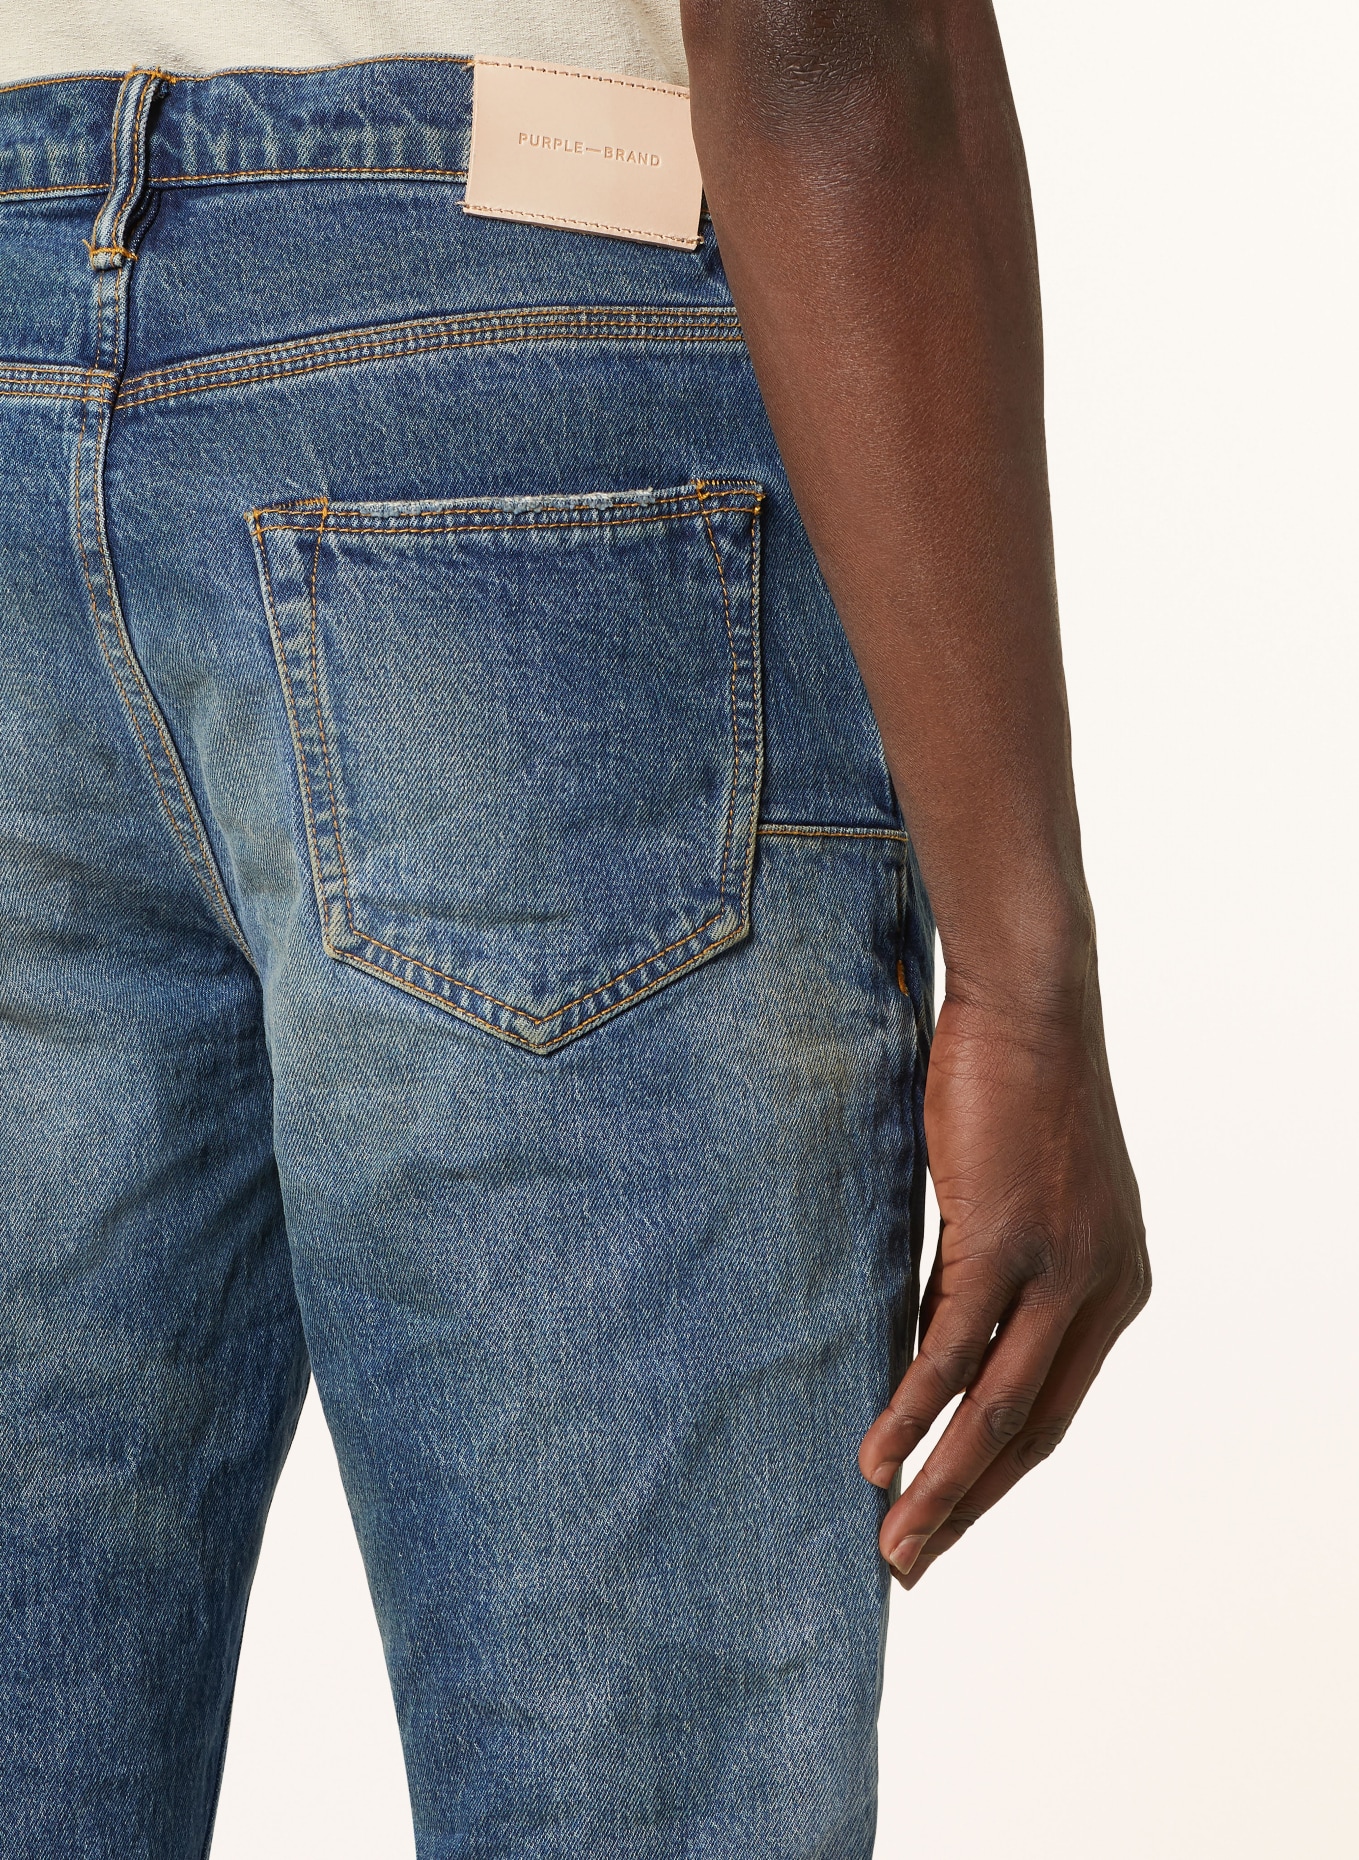 PURPLE BRAND Destroyed jeans skinny fit, Color: DK INDIGO (Image 6)